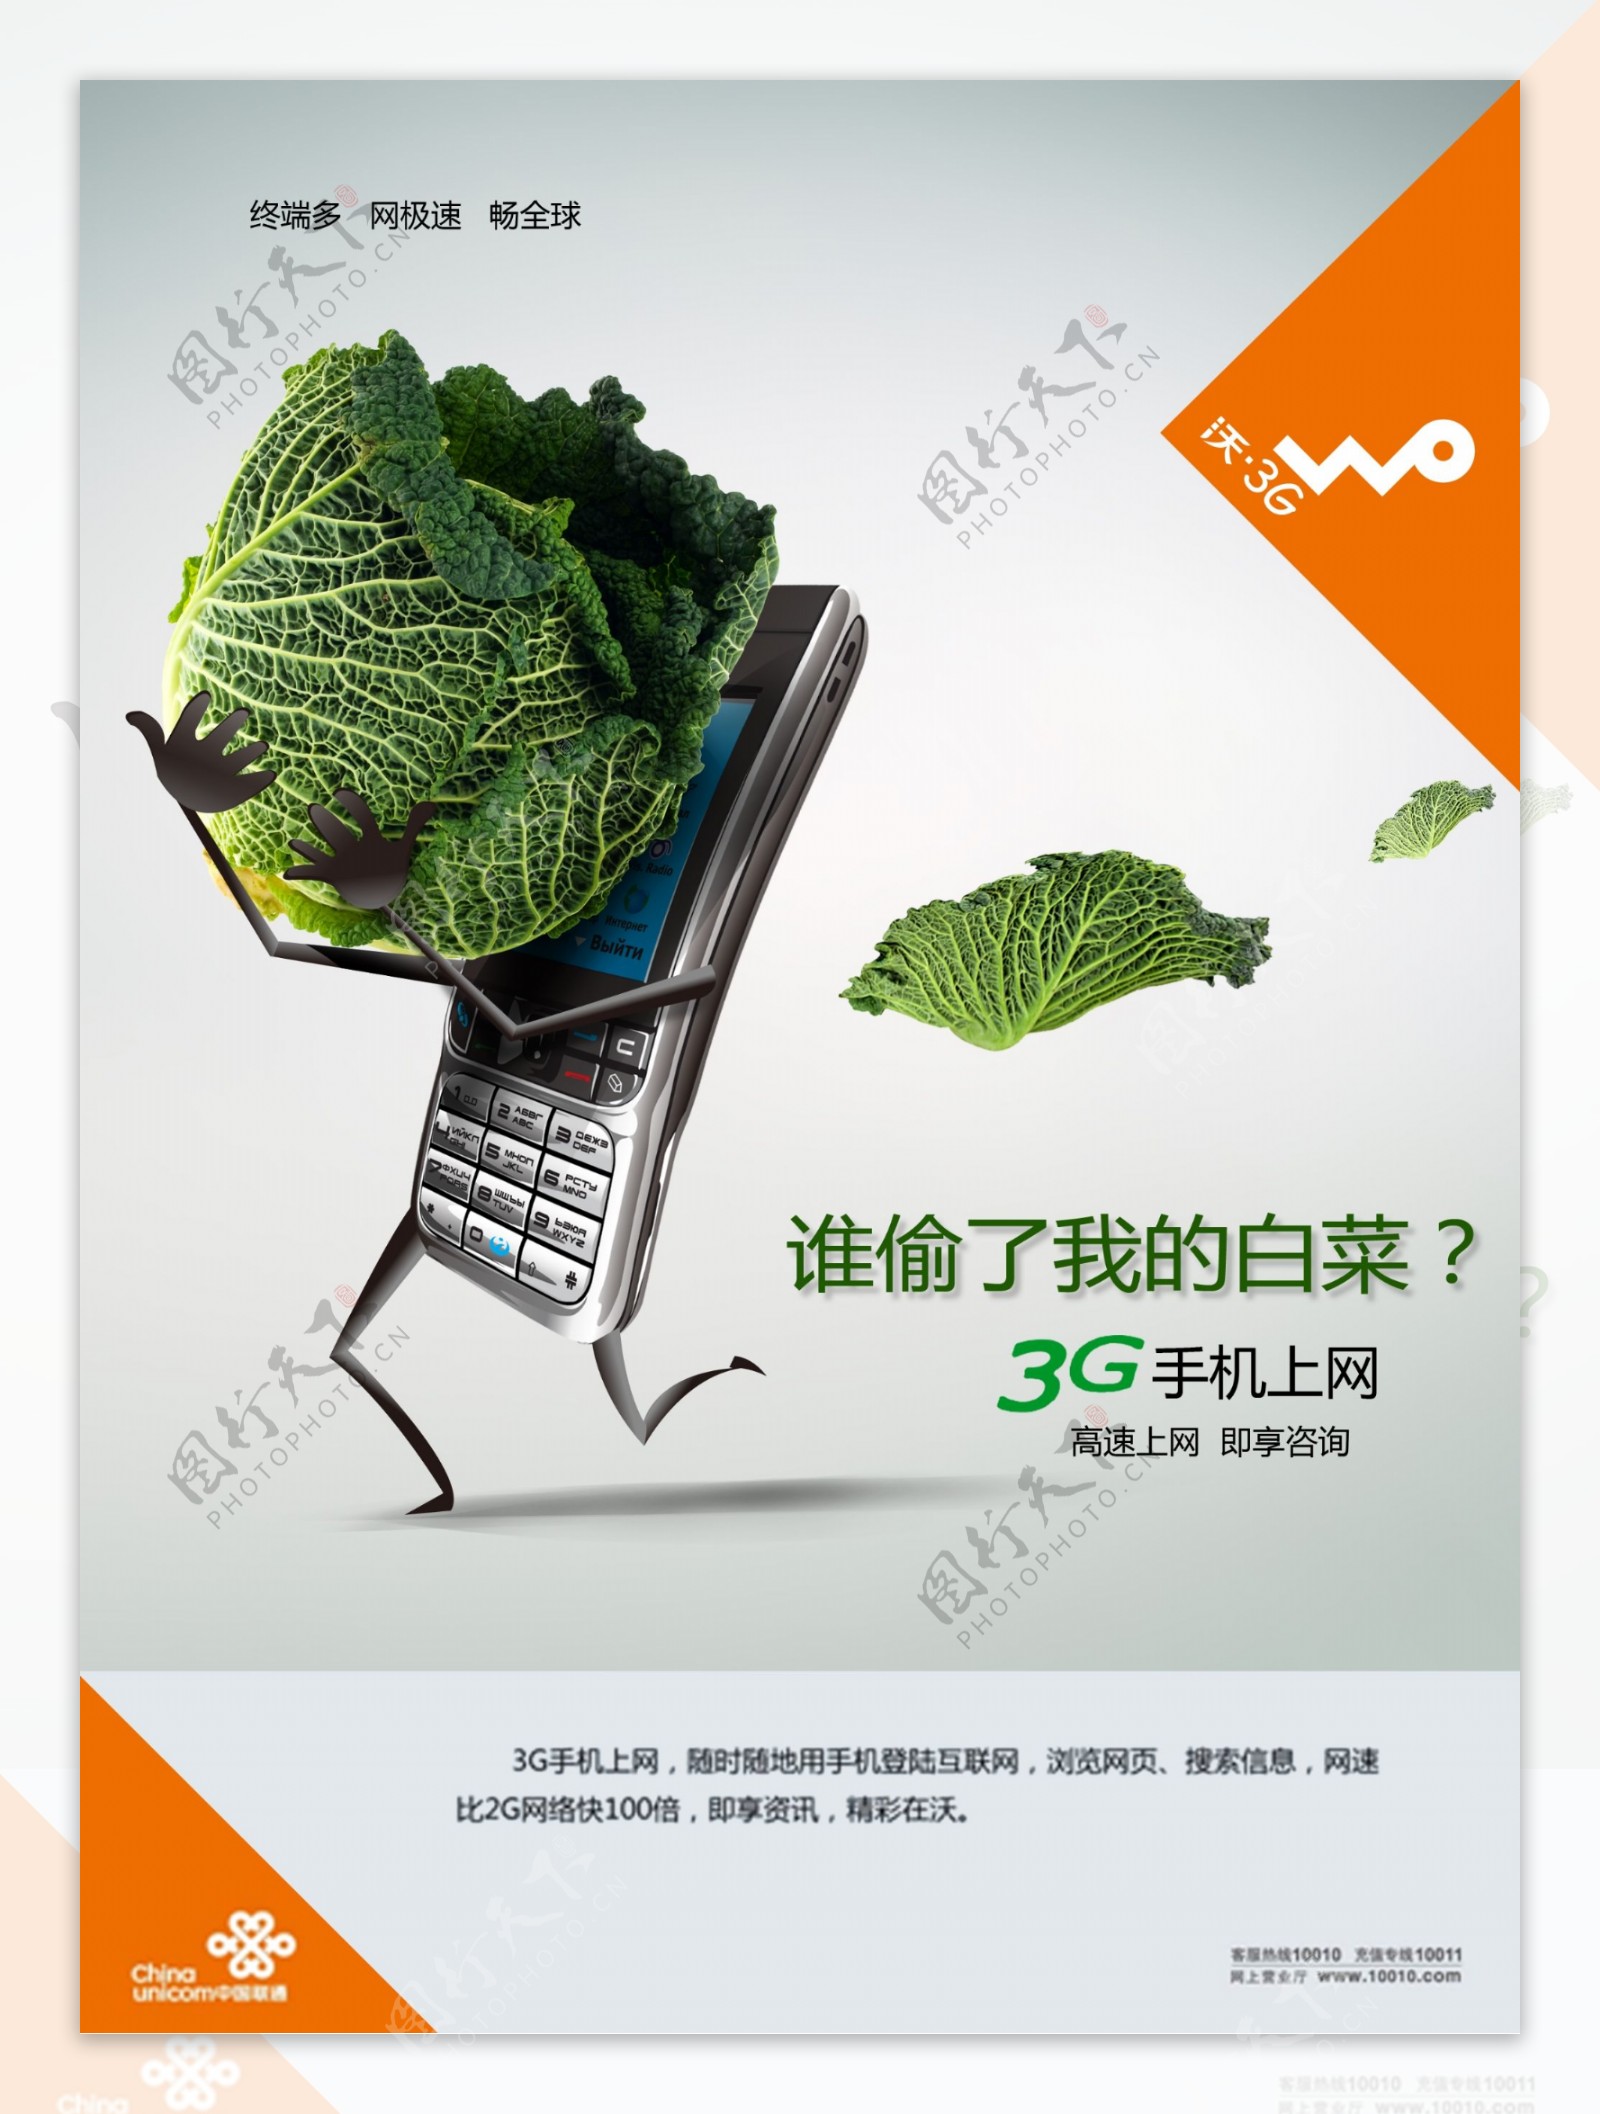 中国移动3G手机上网广告